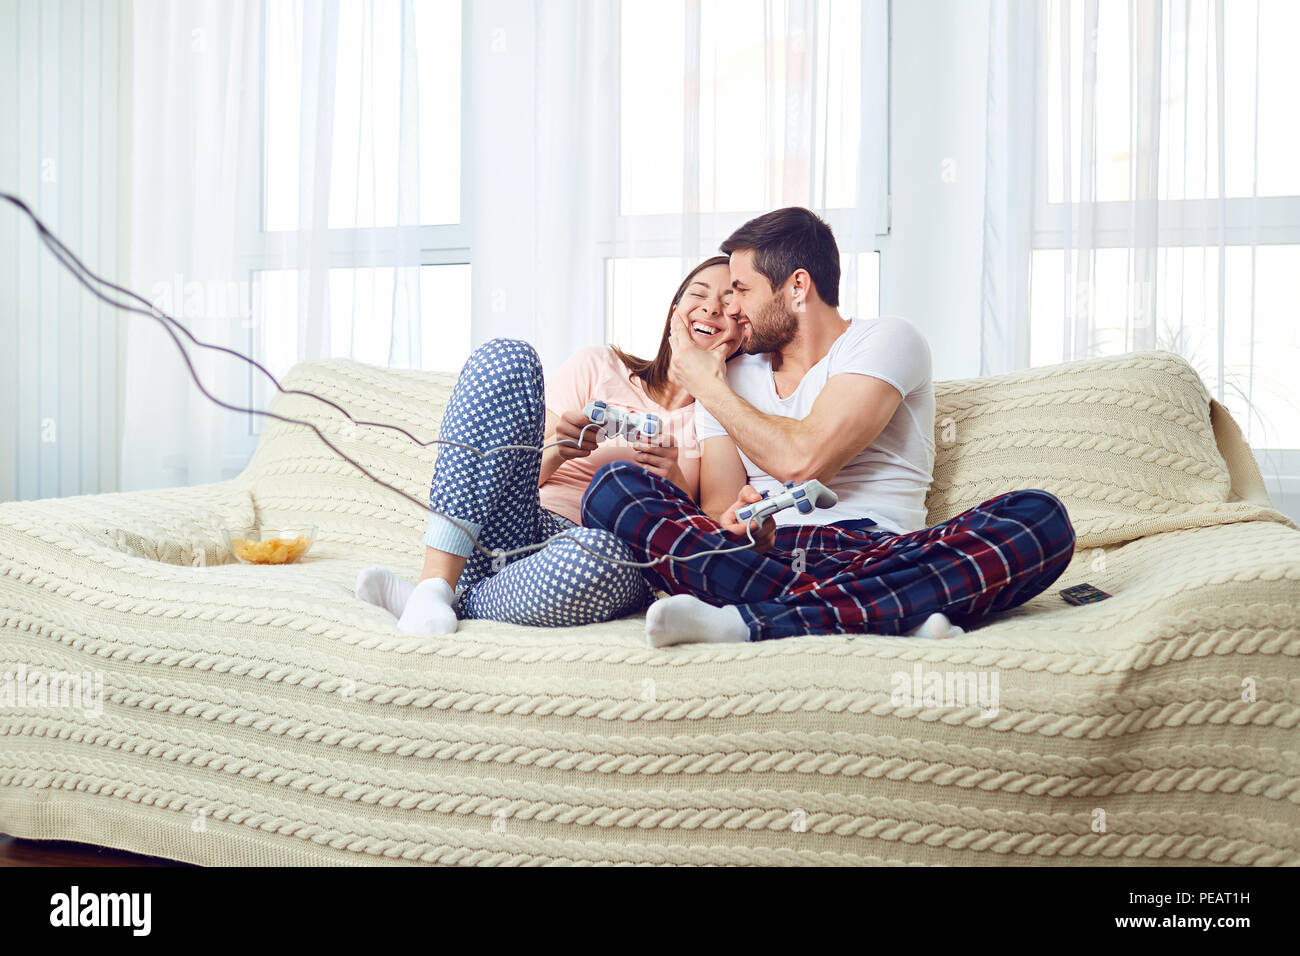 Paar spielen video game Sitzen auf einem Sofa im Zimmer. Stockfoto